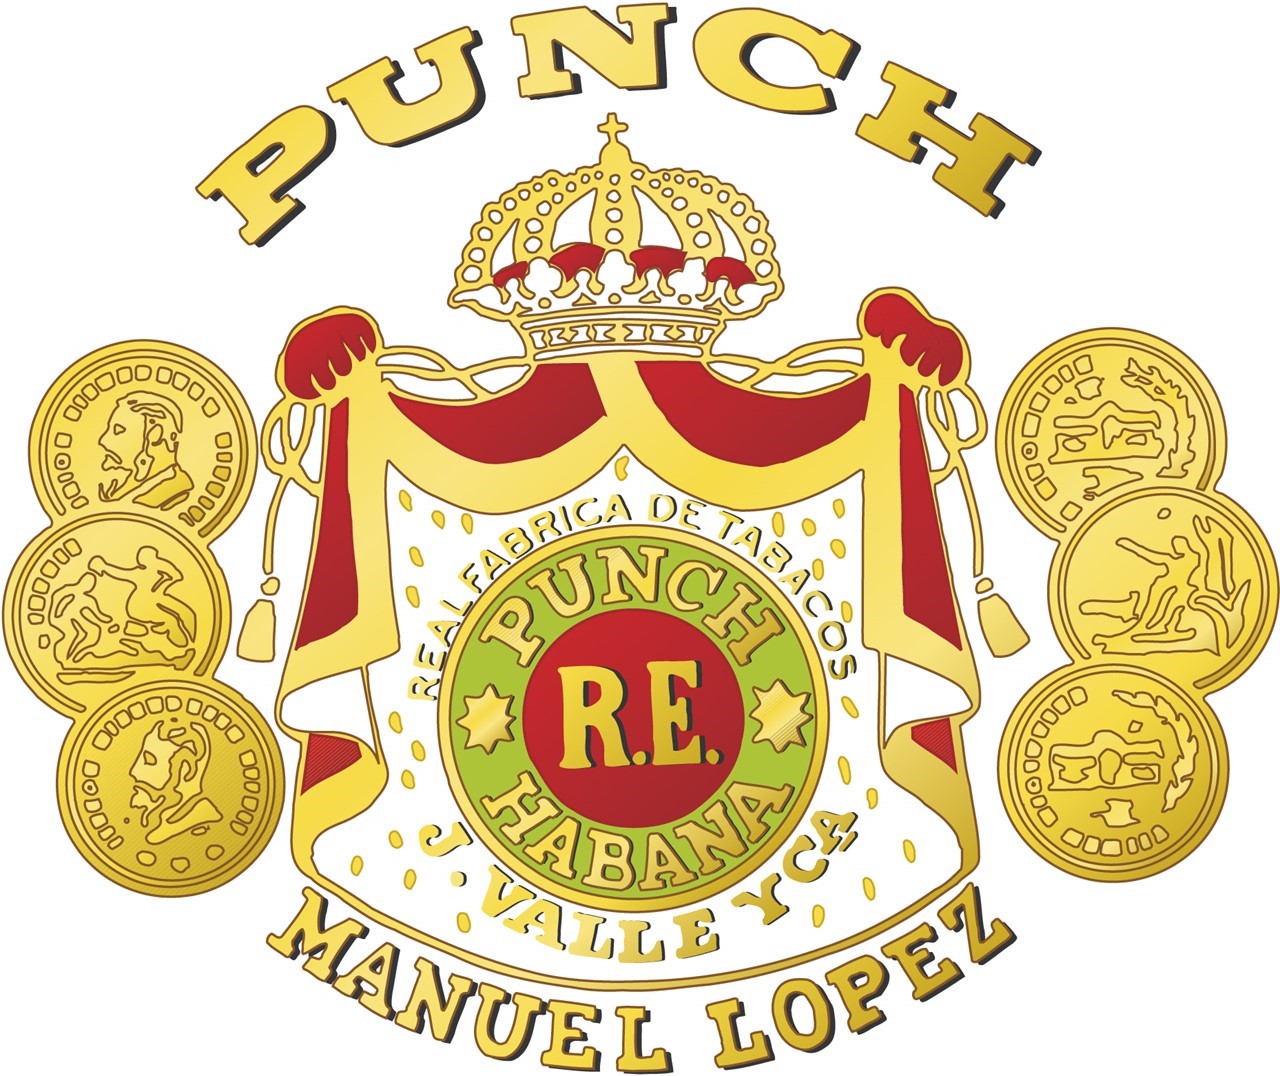 Bild für Kategorie Punch